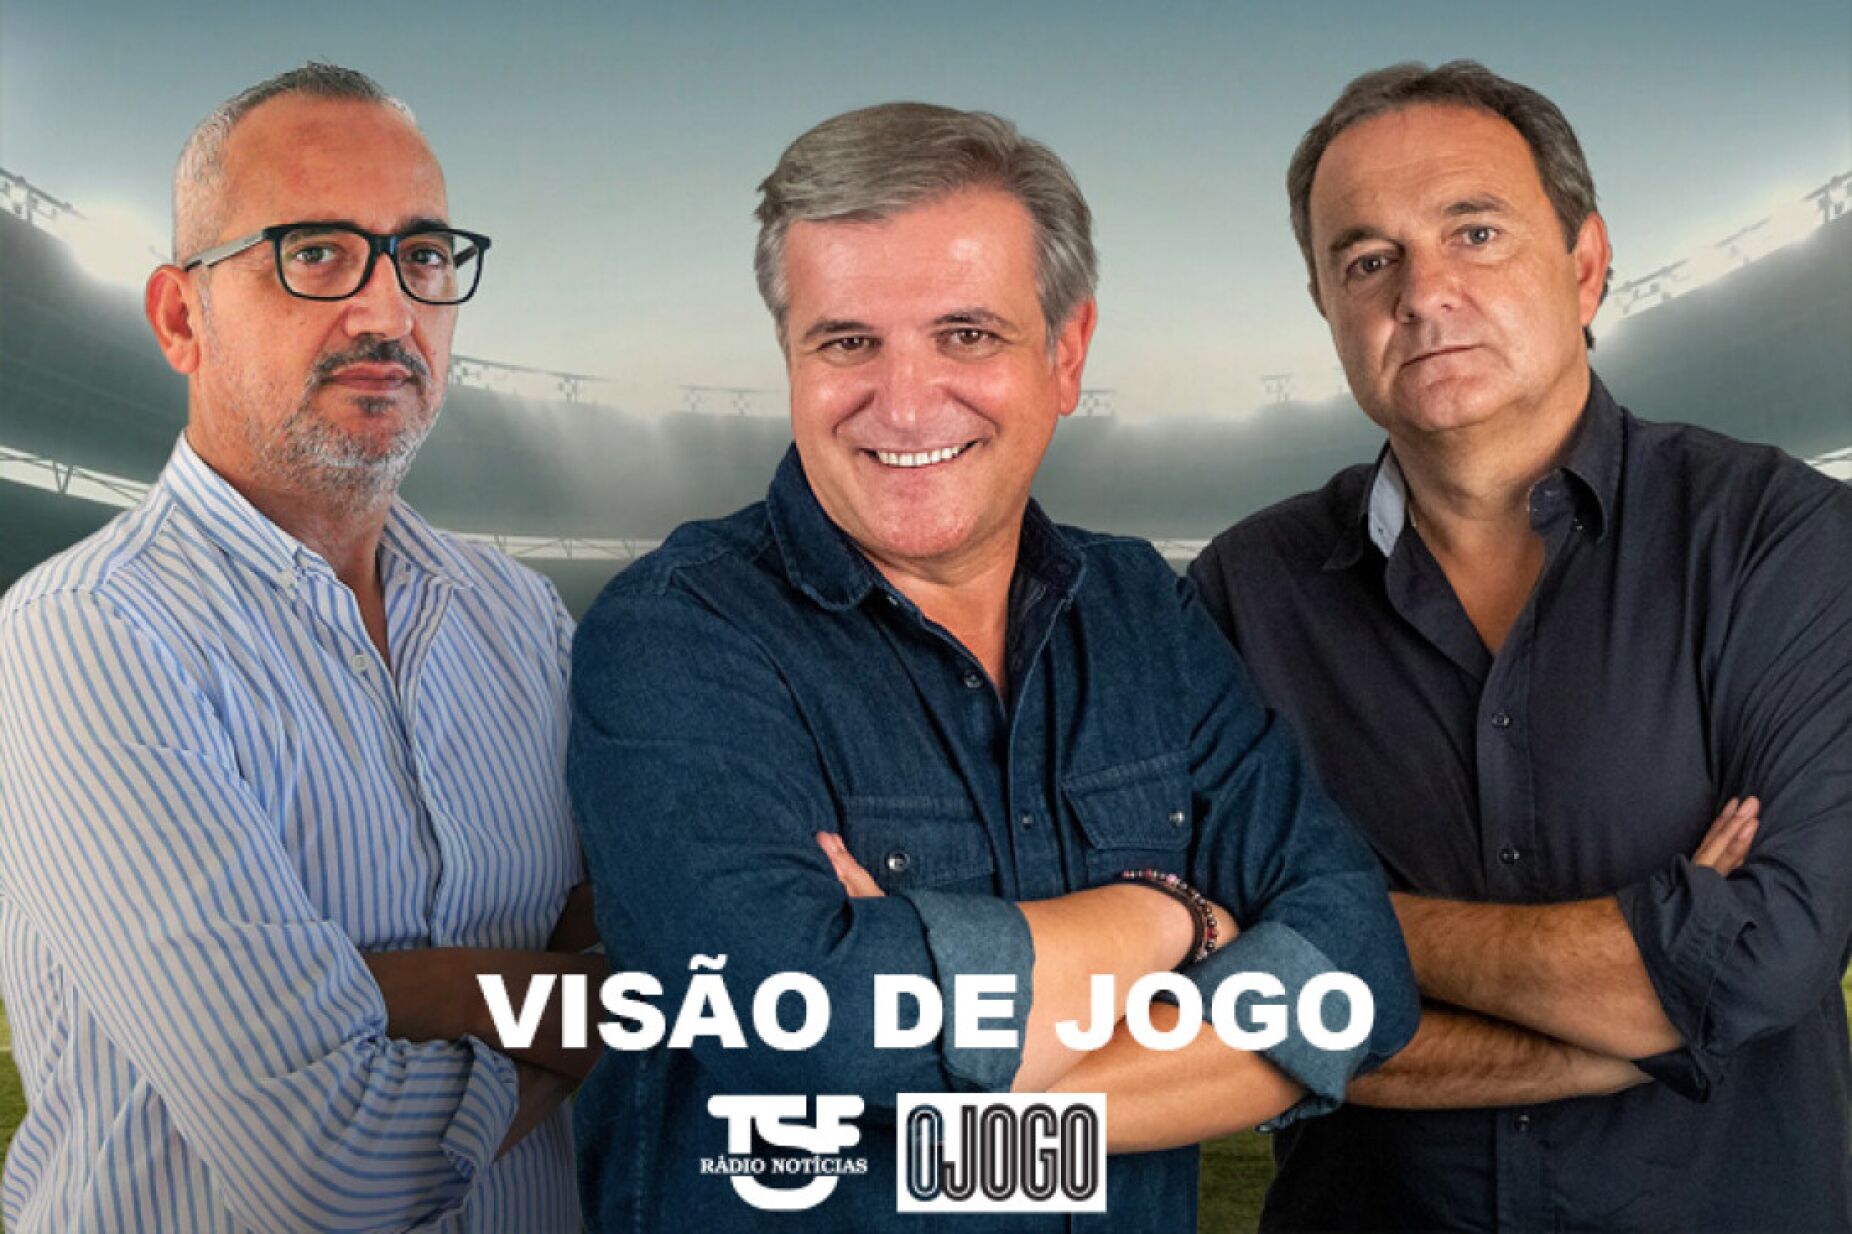 Passámos frio e fome, mas tínhamos de jogar″: o negócio ilegal do futebol  português